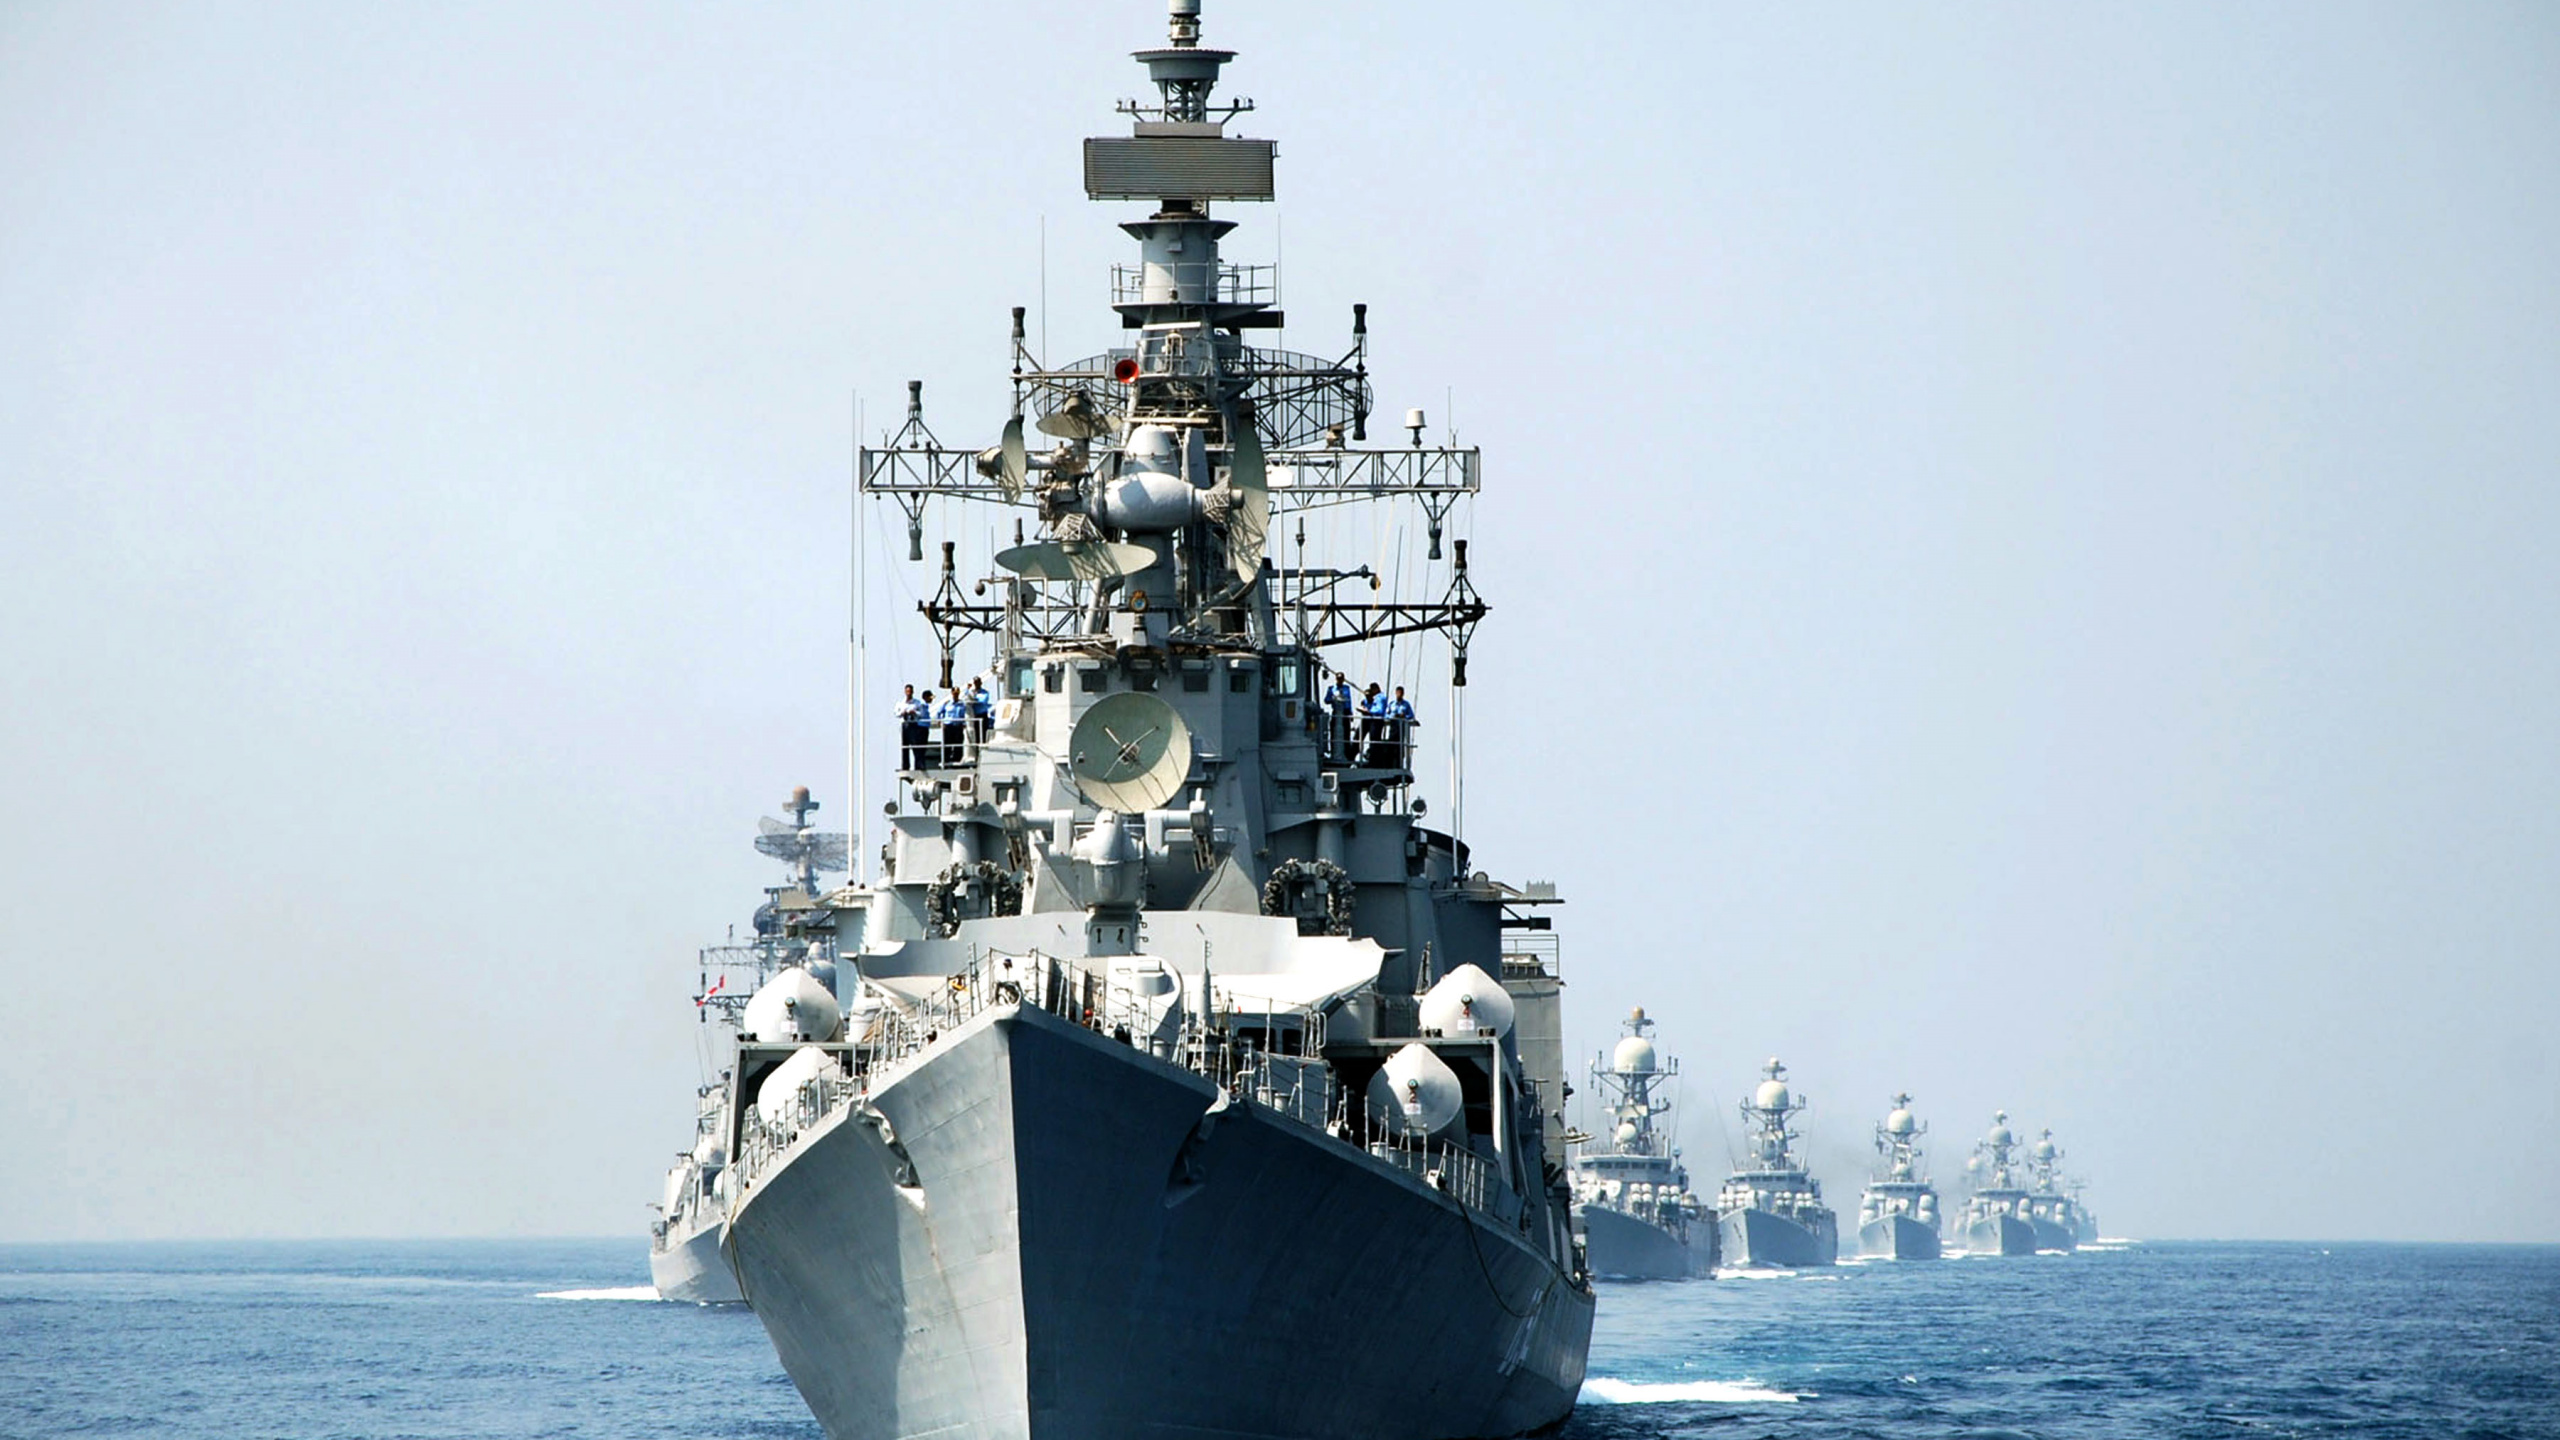 军舰, 海军, 驱逐舰, 海军的船, 战舰 壁纸 2560x1440 允许